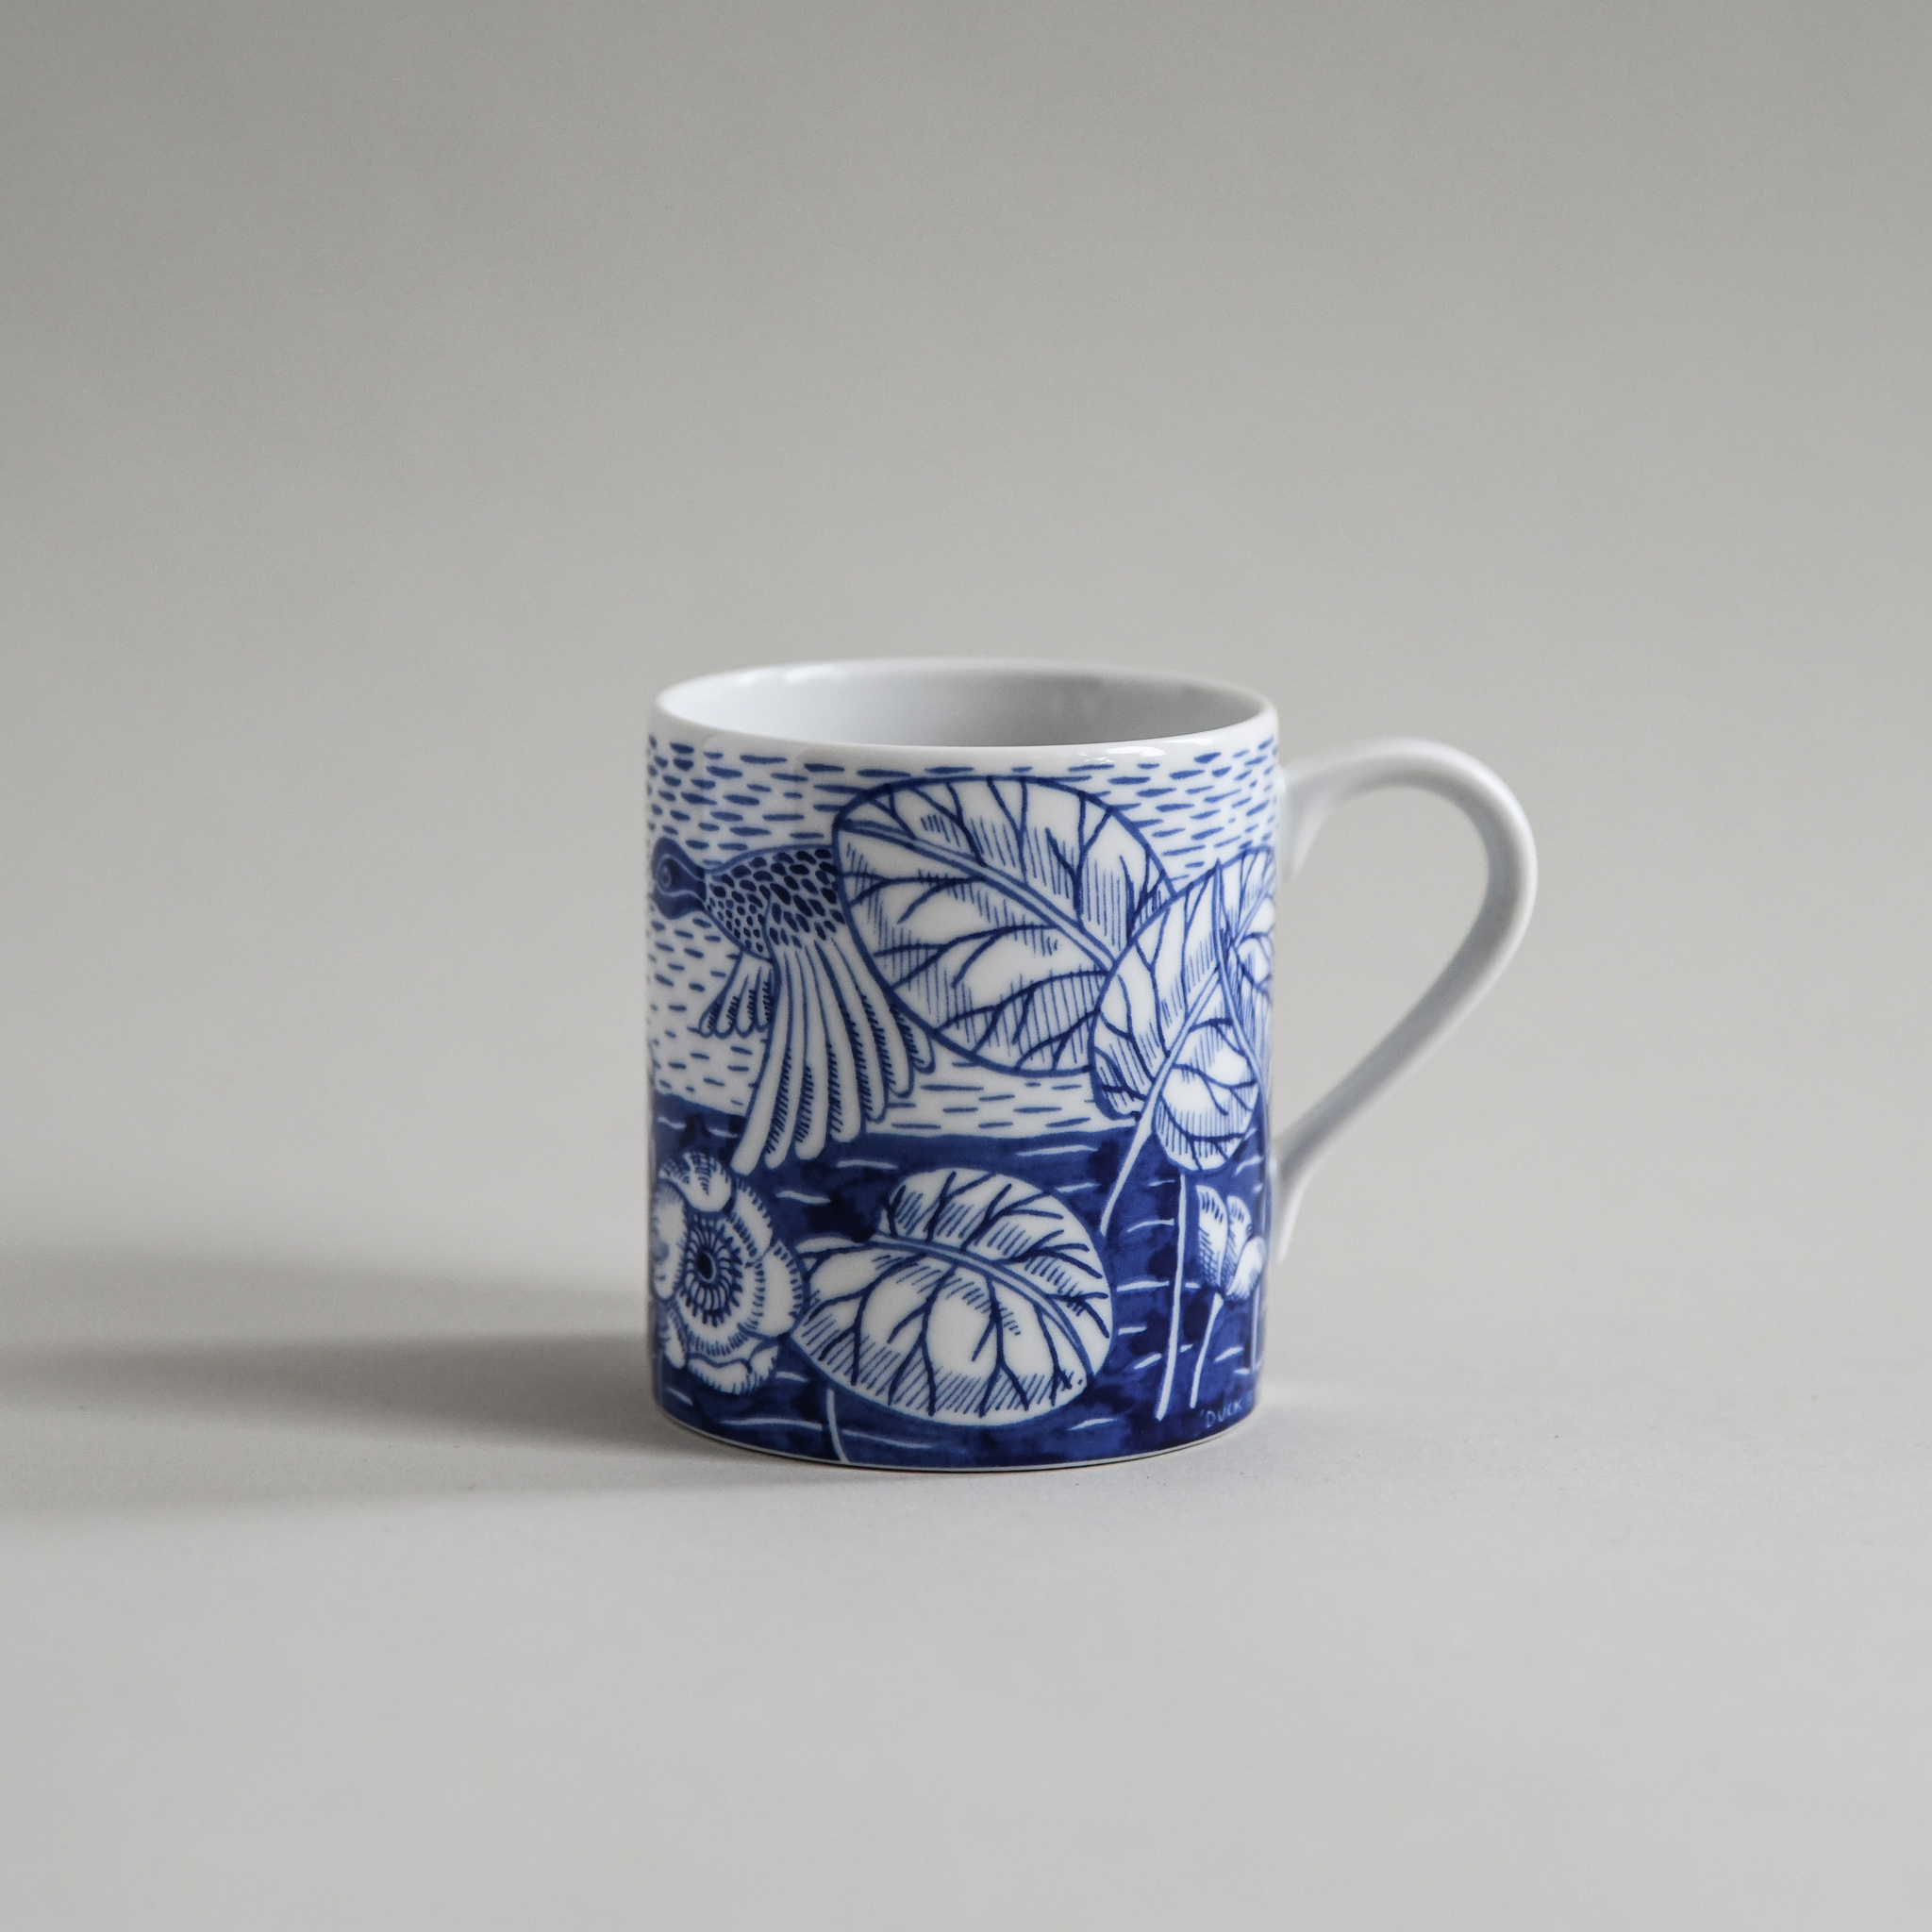 Duckpond mug blue